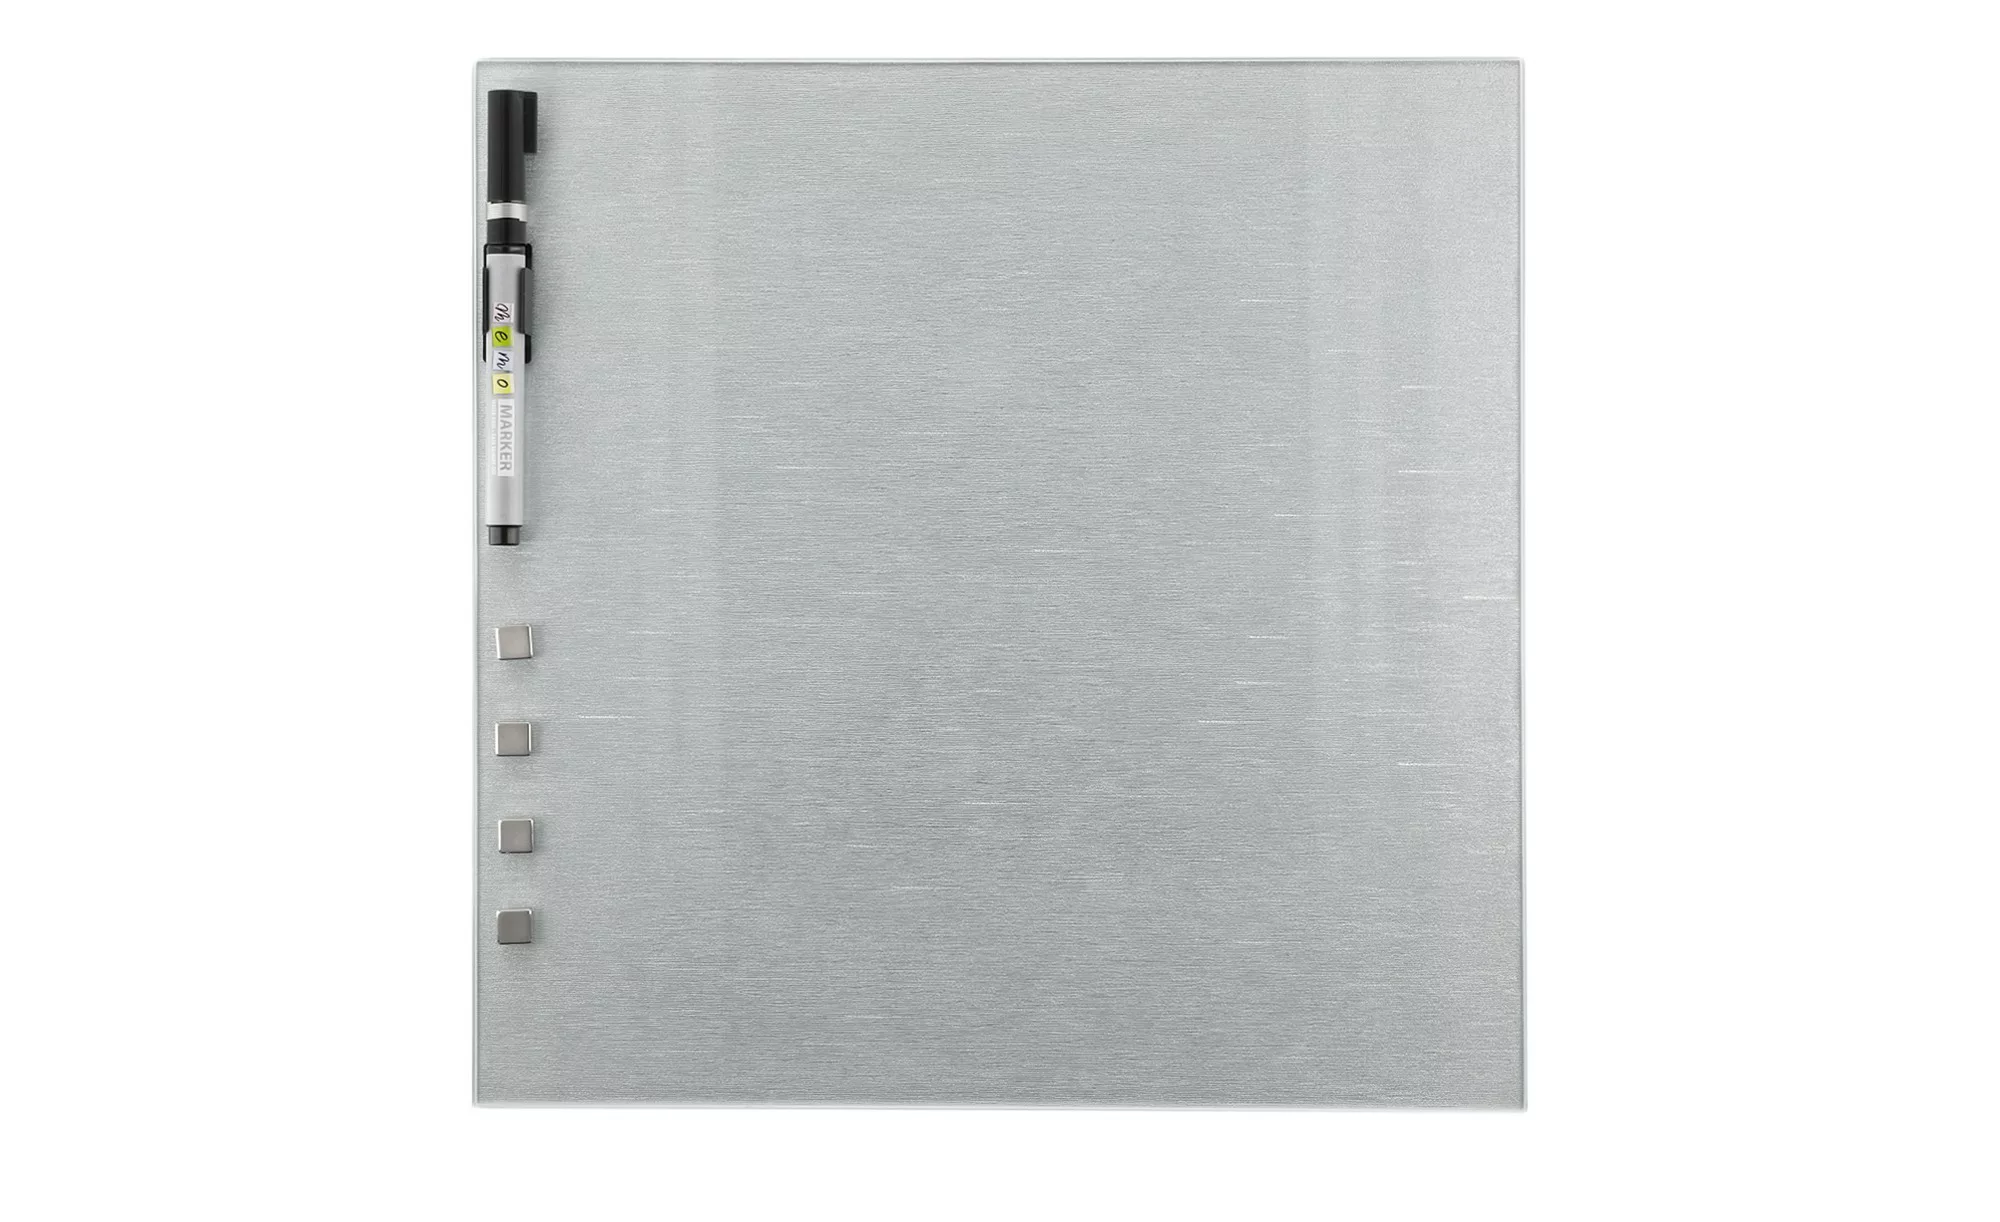 Memoboard 30x30 cm  Silber - silber - 30 cm - 30 cm - Sconto günstig online kaufen